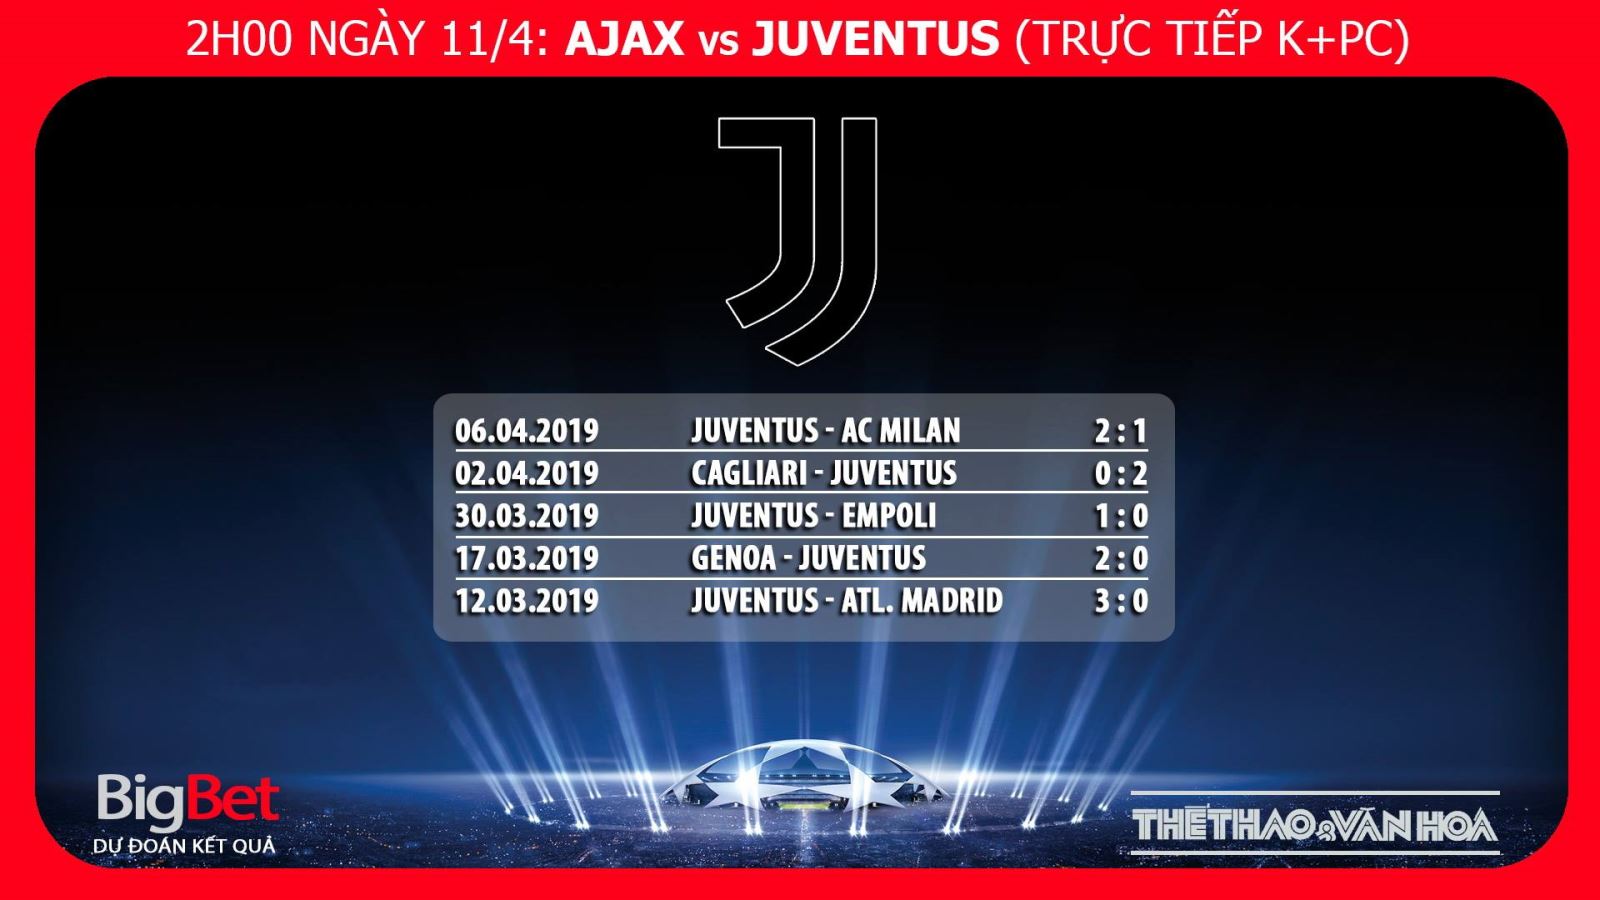 Kèo Ajax vs Juventus, nhận định bóng đá Ajax vs Juve, kèo Juve vs Ajax, nhận định bóng đá Juventus vs Ajax, kèo bóng đá, dự đoán bóng đá, nhận định Ajax vs Juve, tỉ lệ cược Juventus vs Ajax, kèo Ajax, kèo Juventus